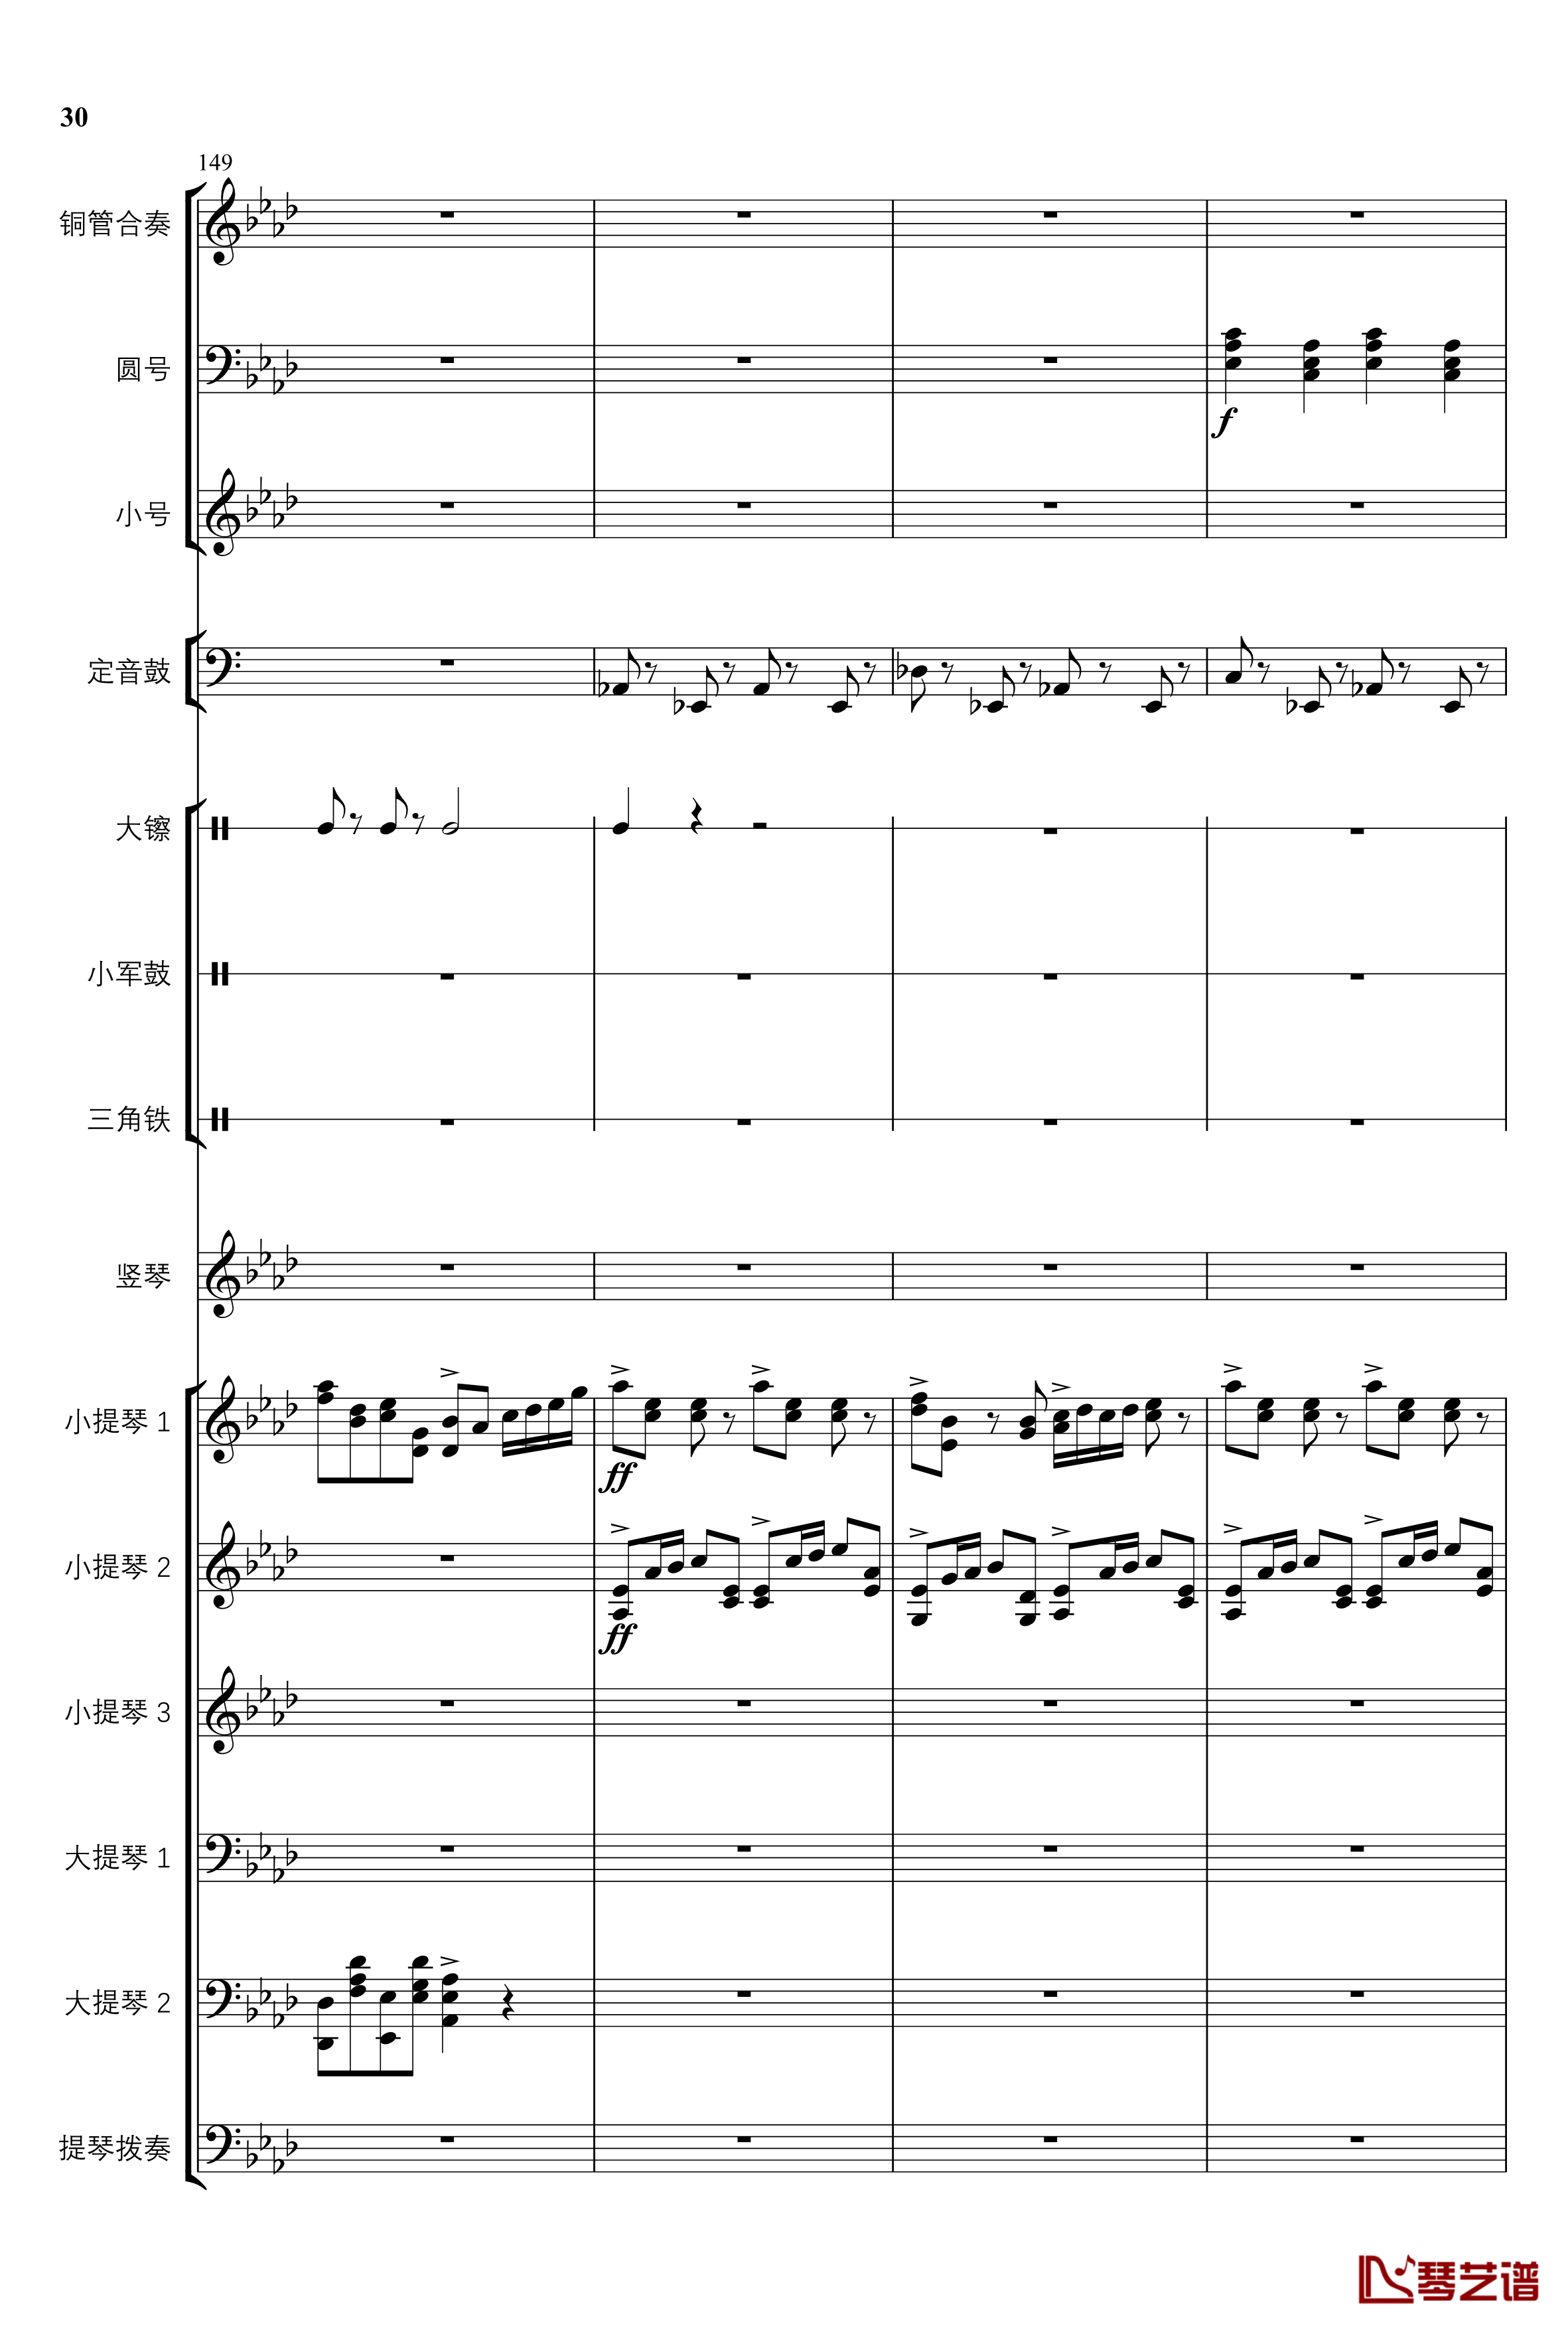 2013考试周的叙事曲钢琴谱-管弦乐重编曲版-江畔新绿30